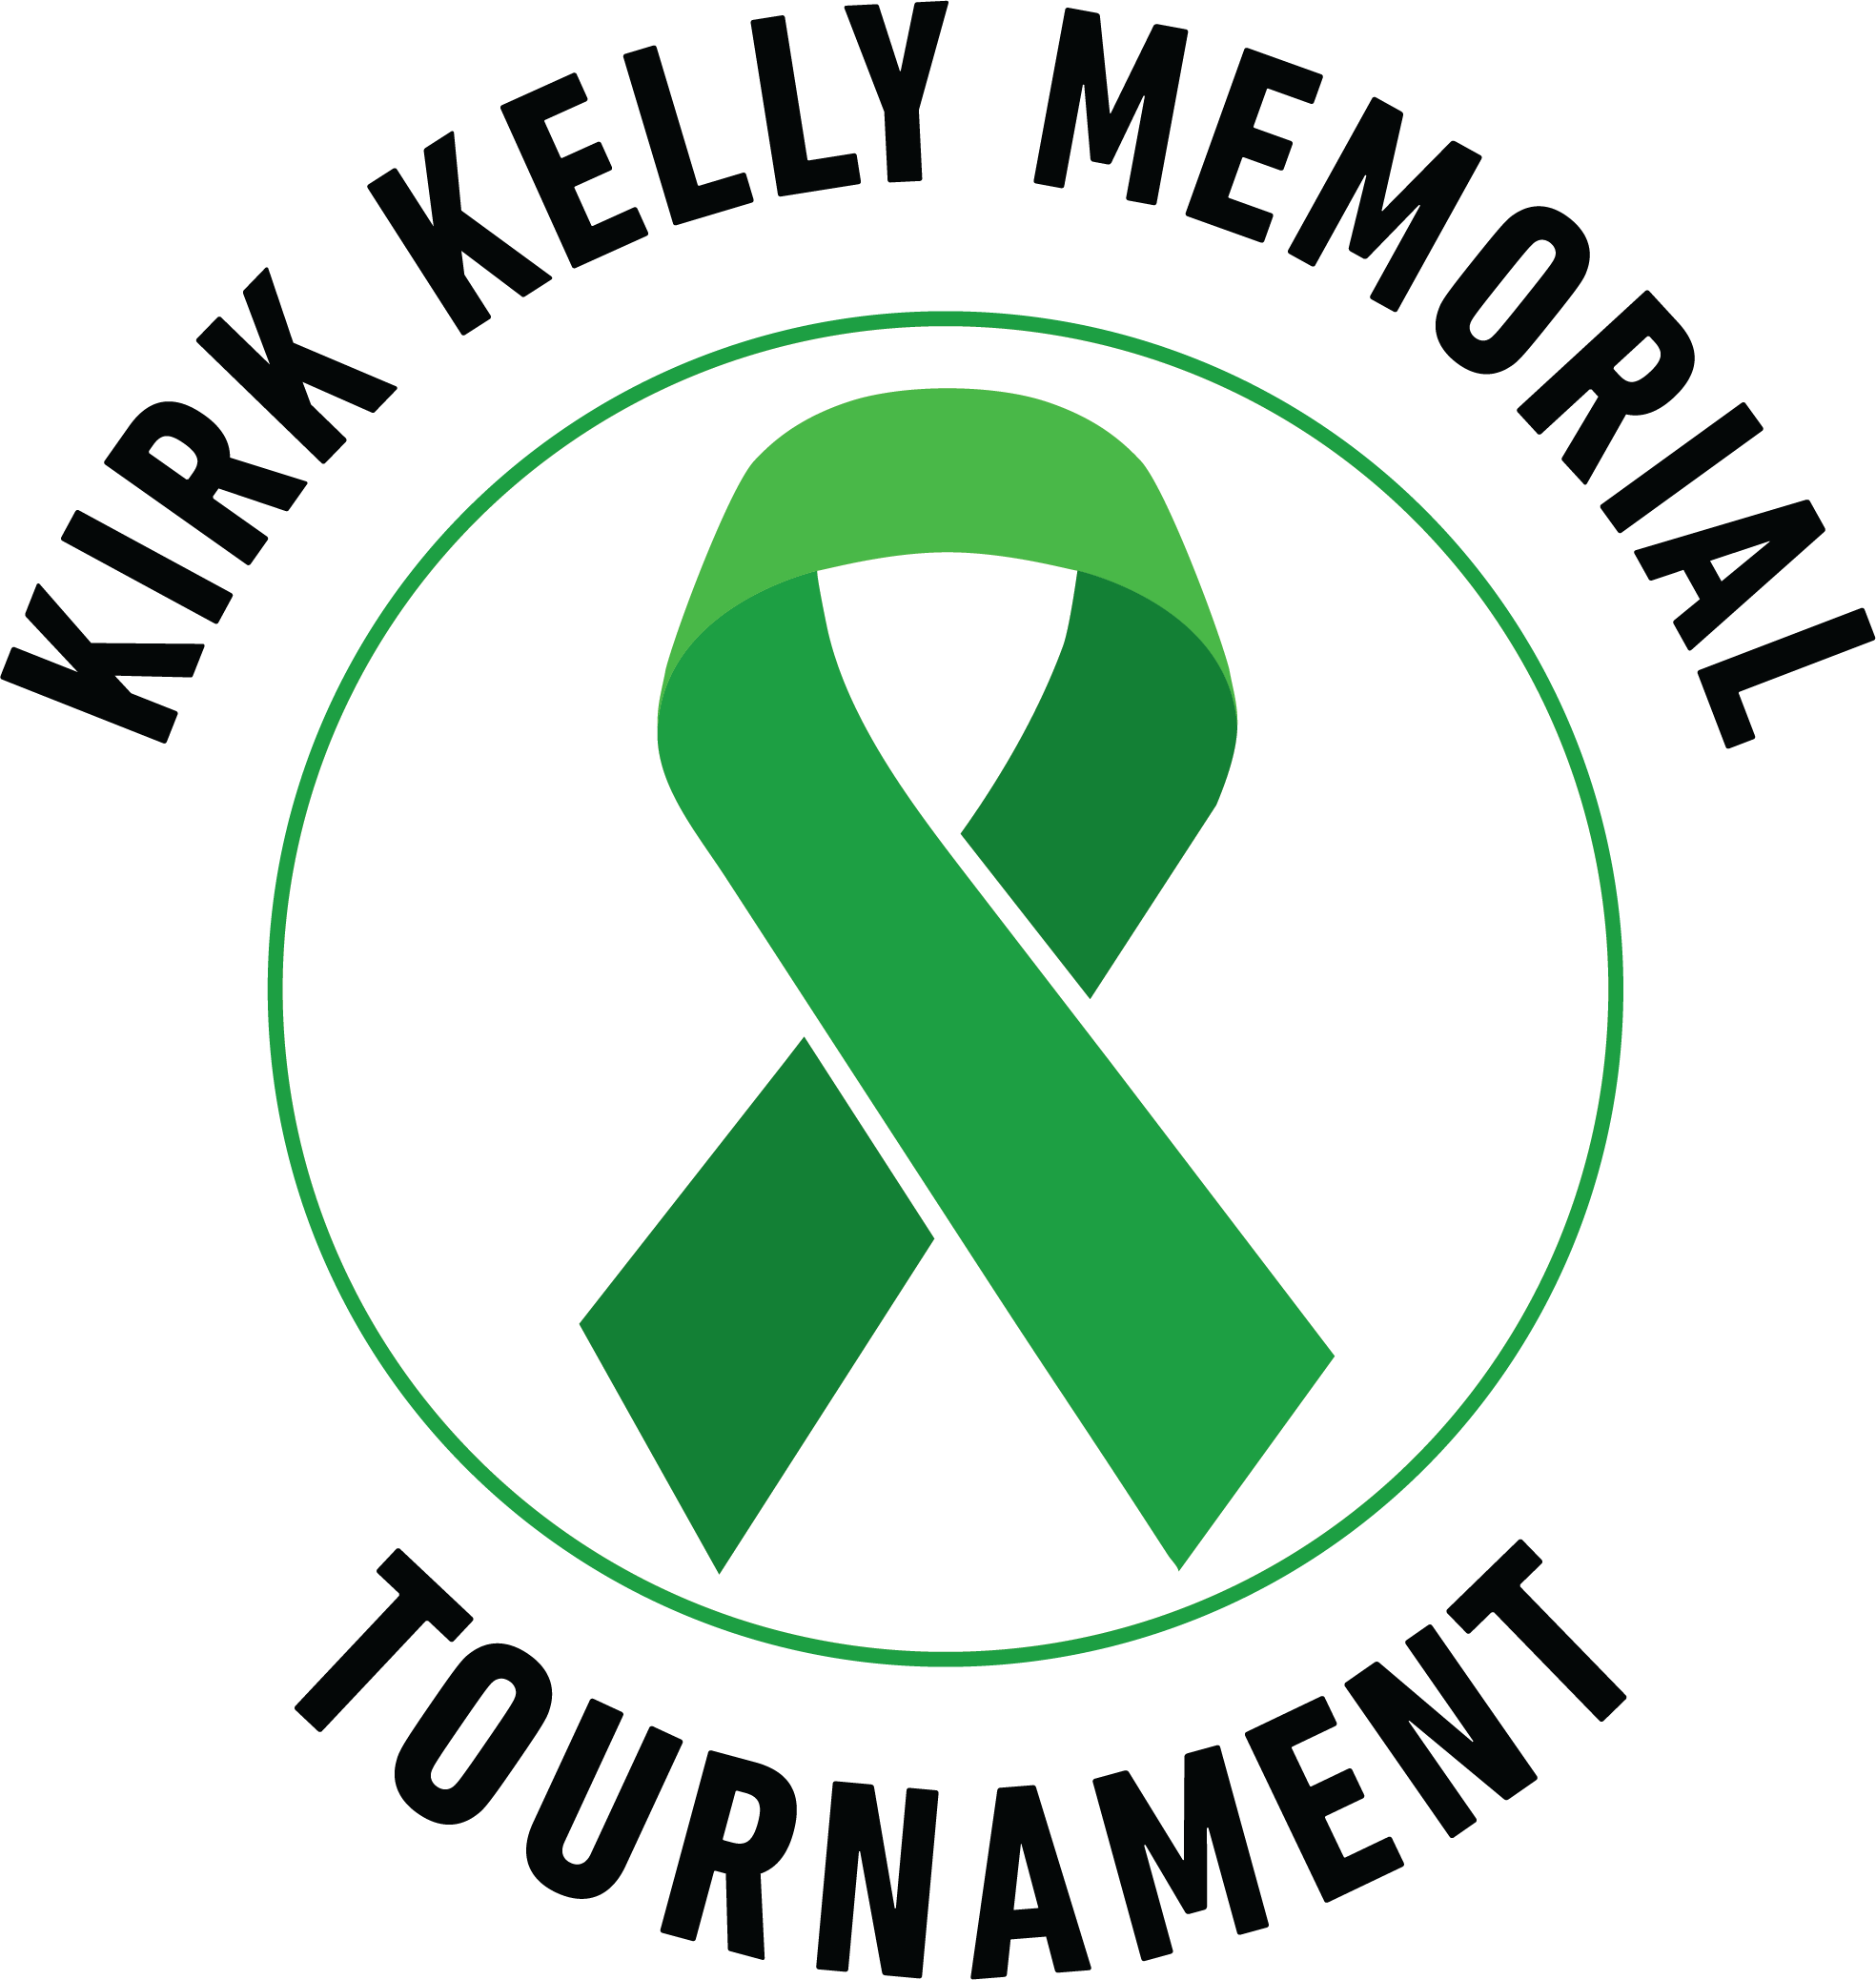 Kirk Kelly Memorial Atom Tournament